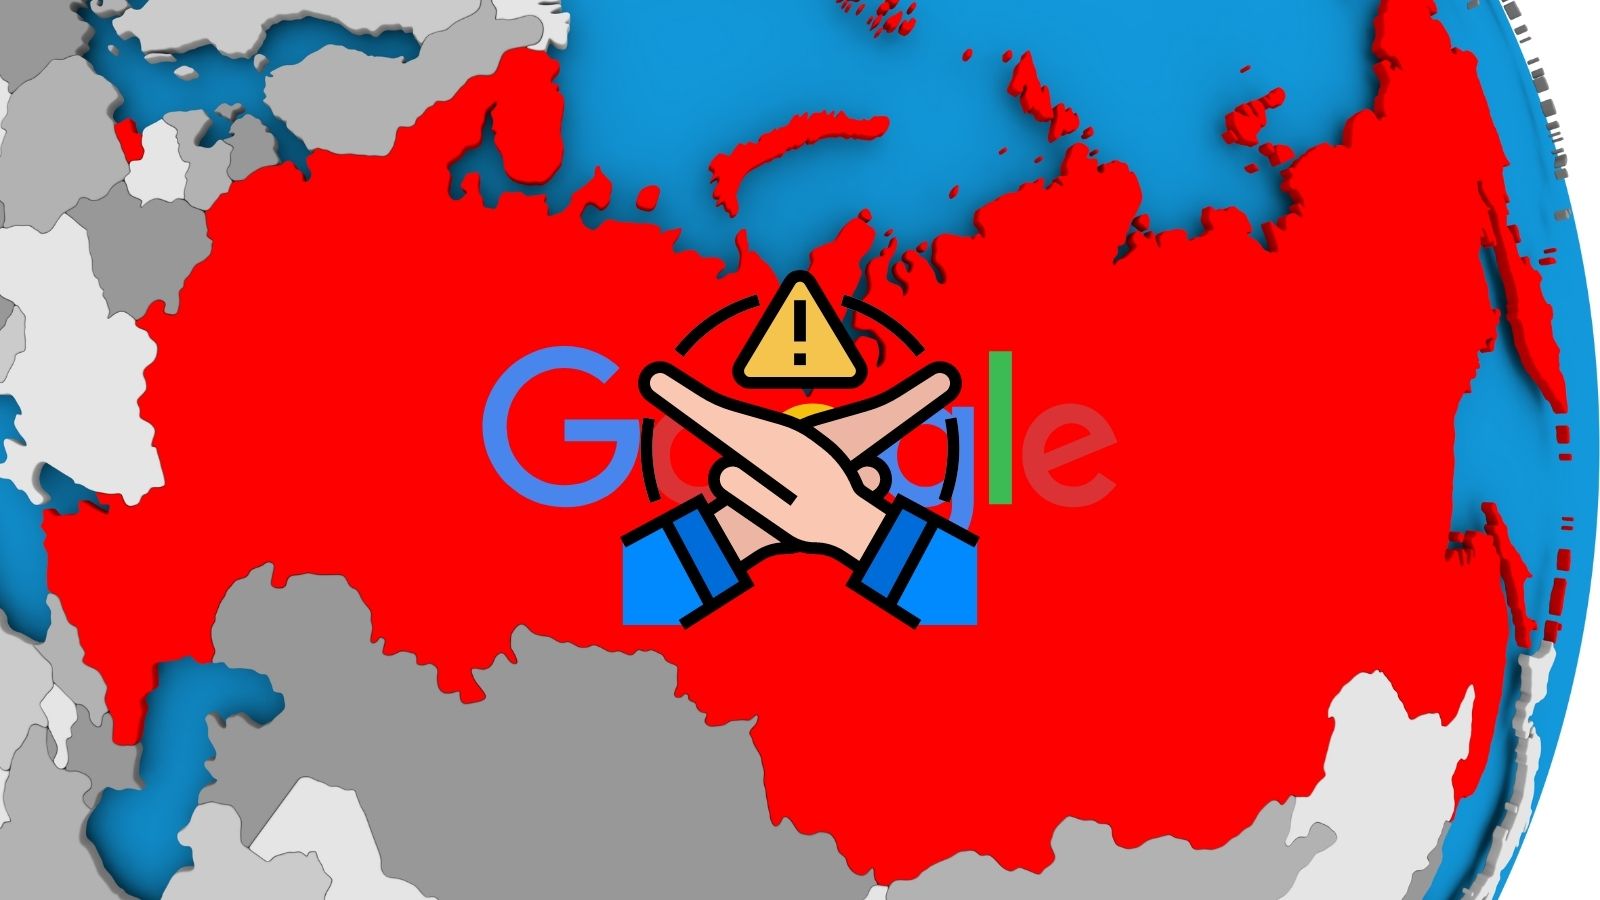 La Russia multa Google per 21,7 miliardi di rubli per "false informazioni" sulla guerra in Ucraina